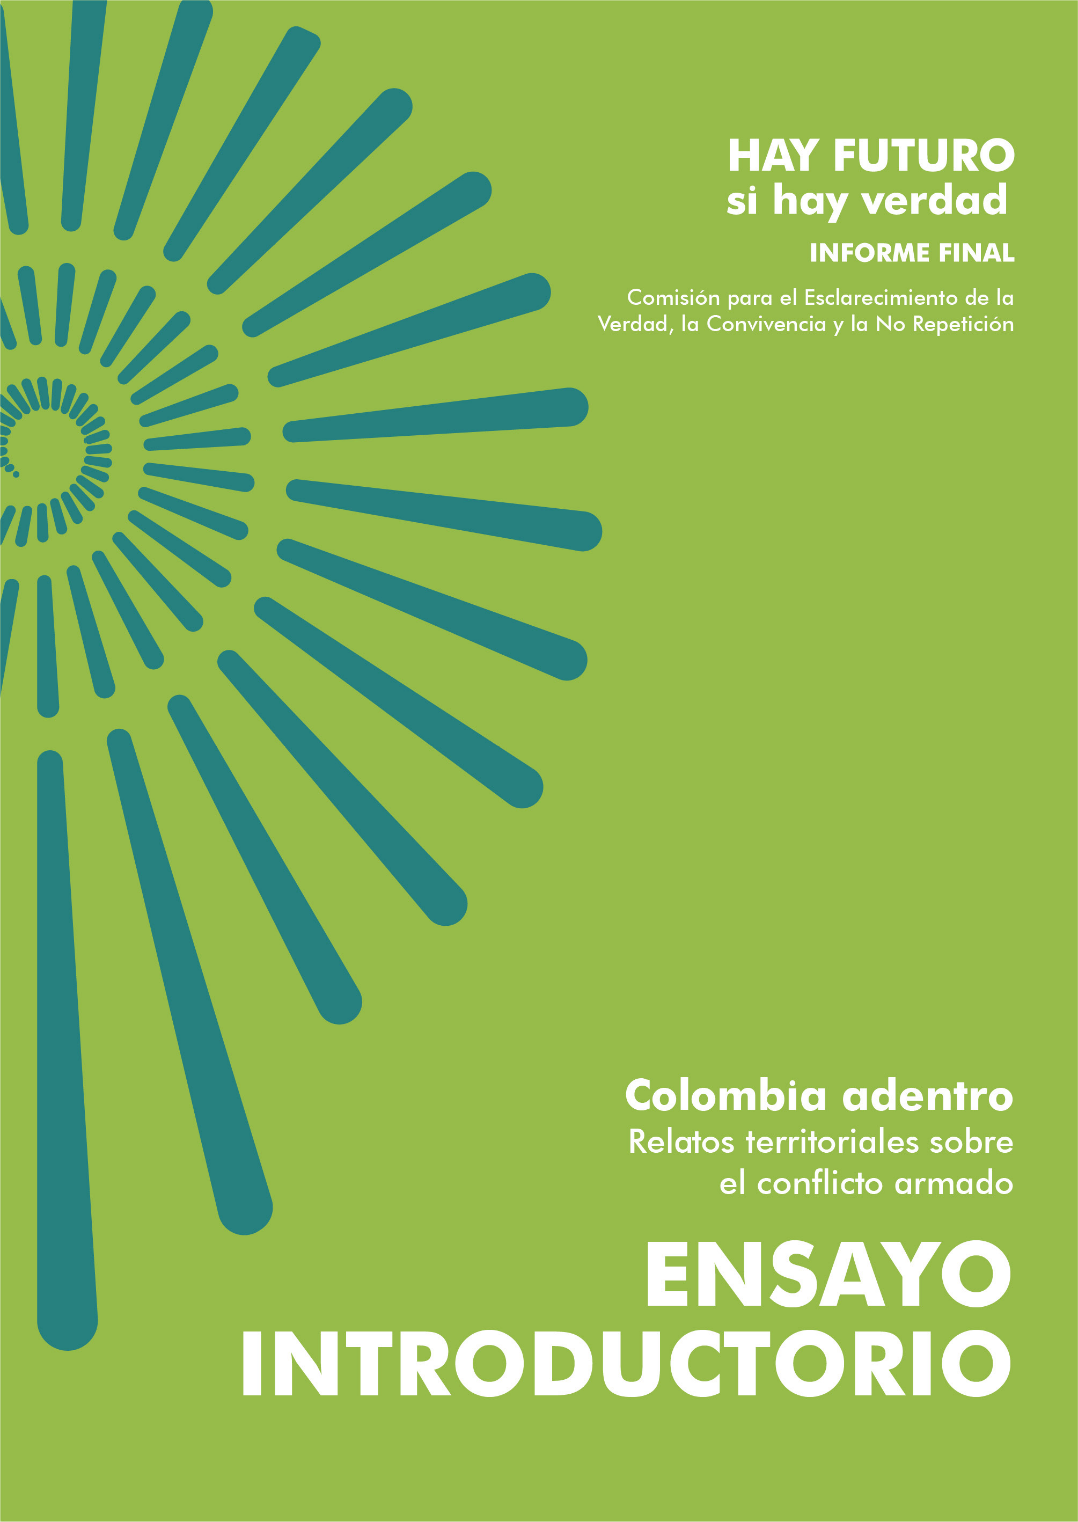 Colombia adentro. Relatos territoriales sobre el conflicto armado. Ensayo Introductorio